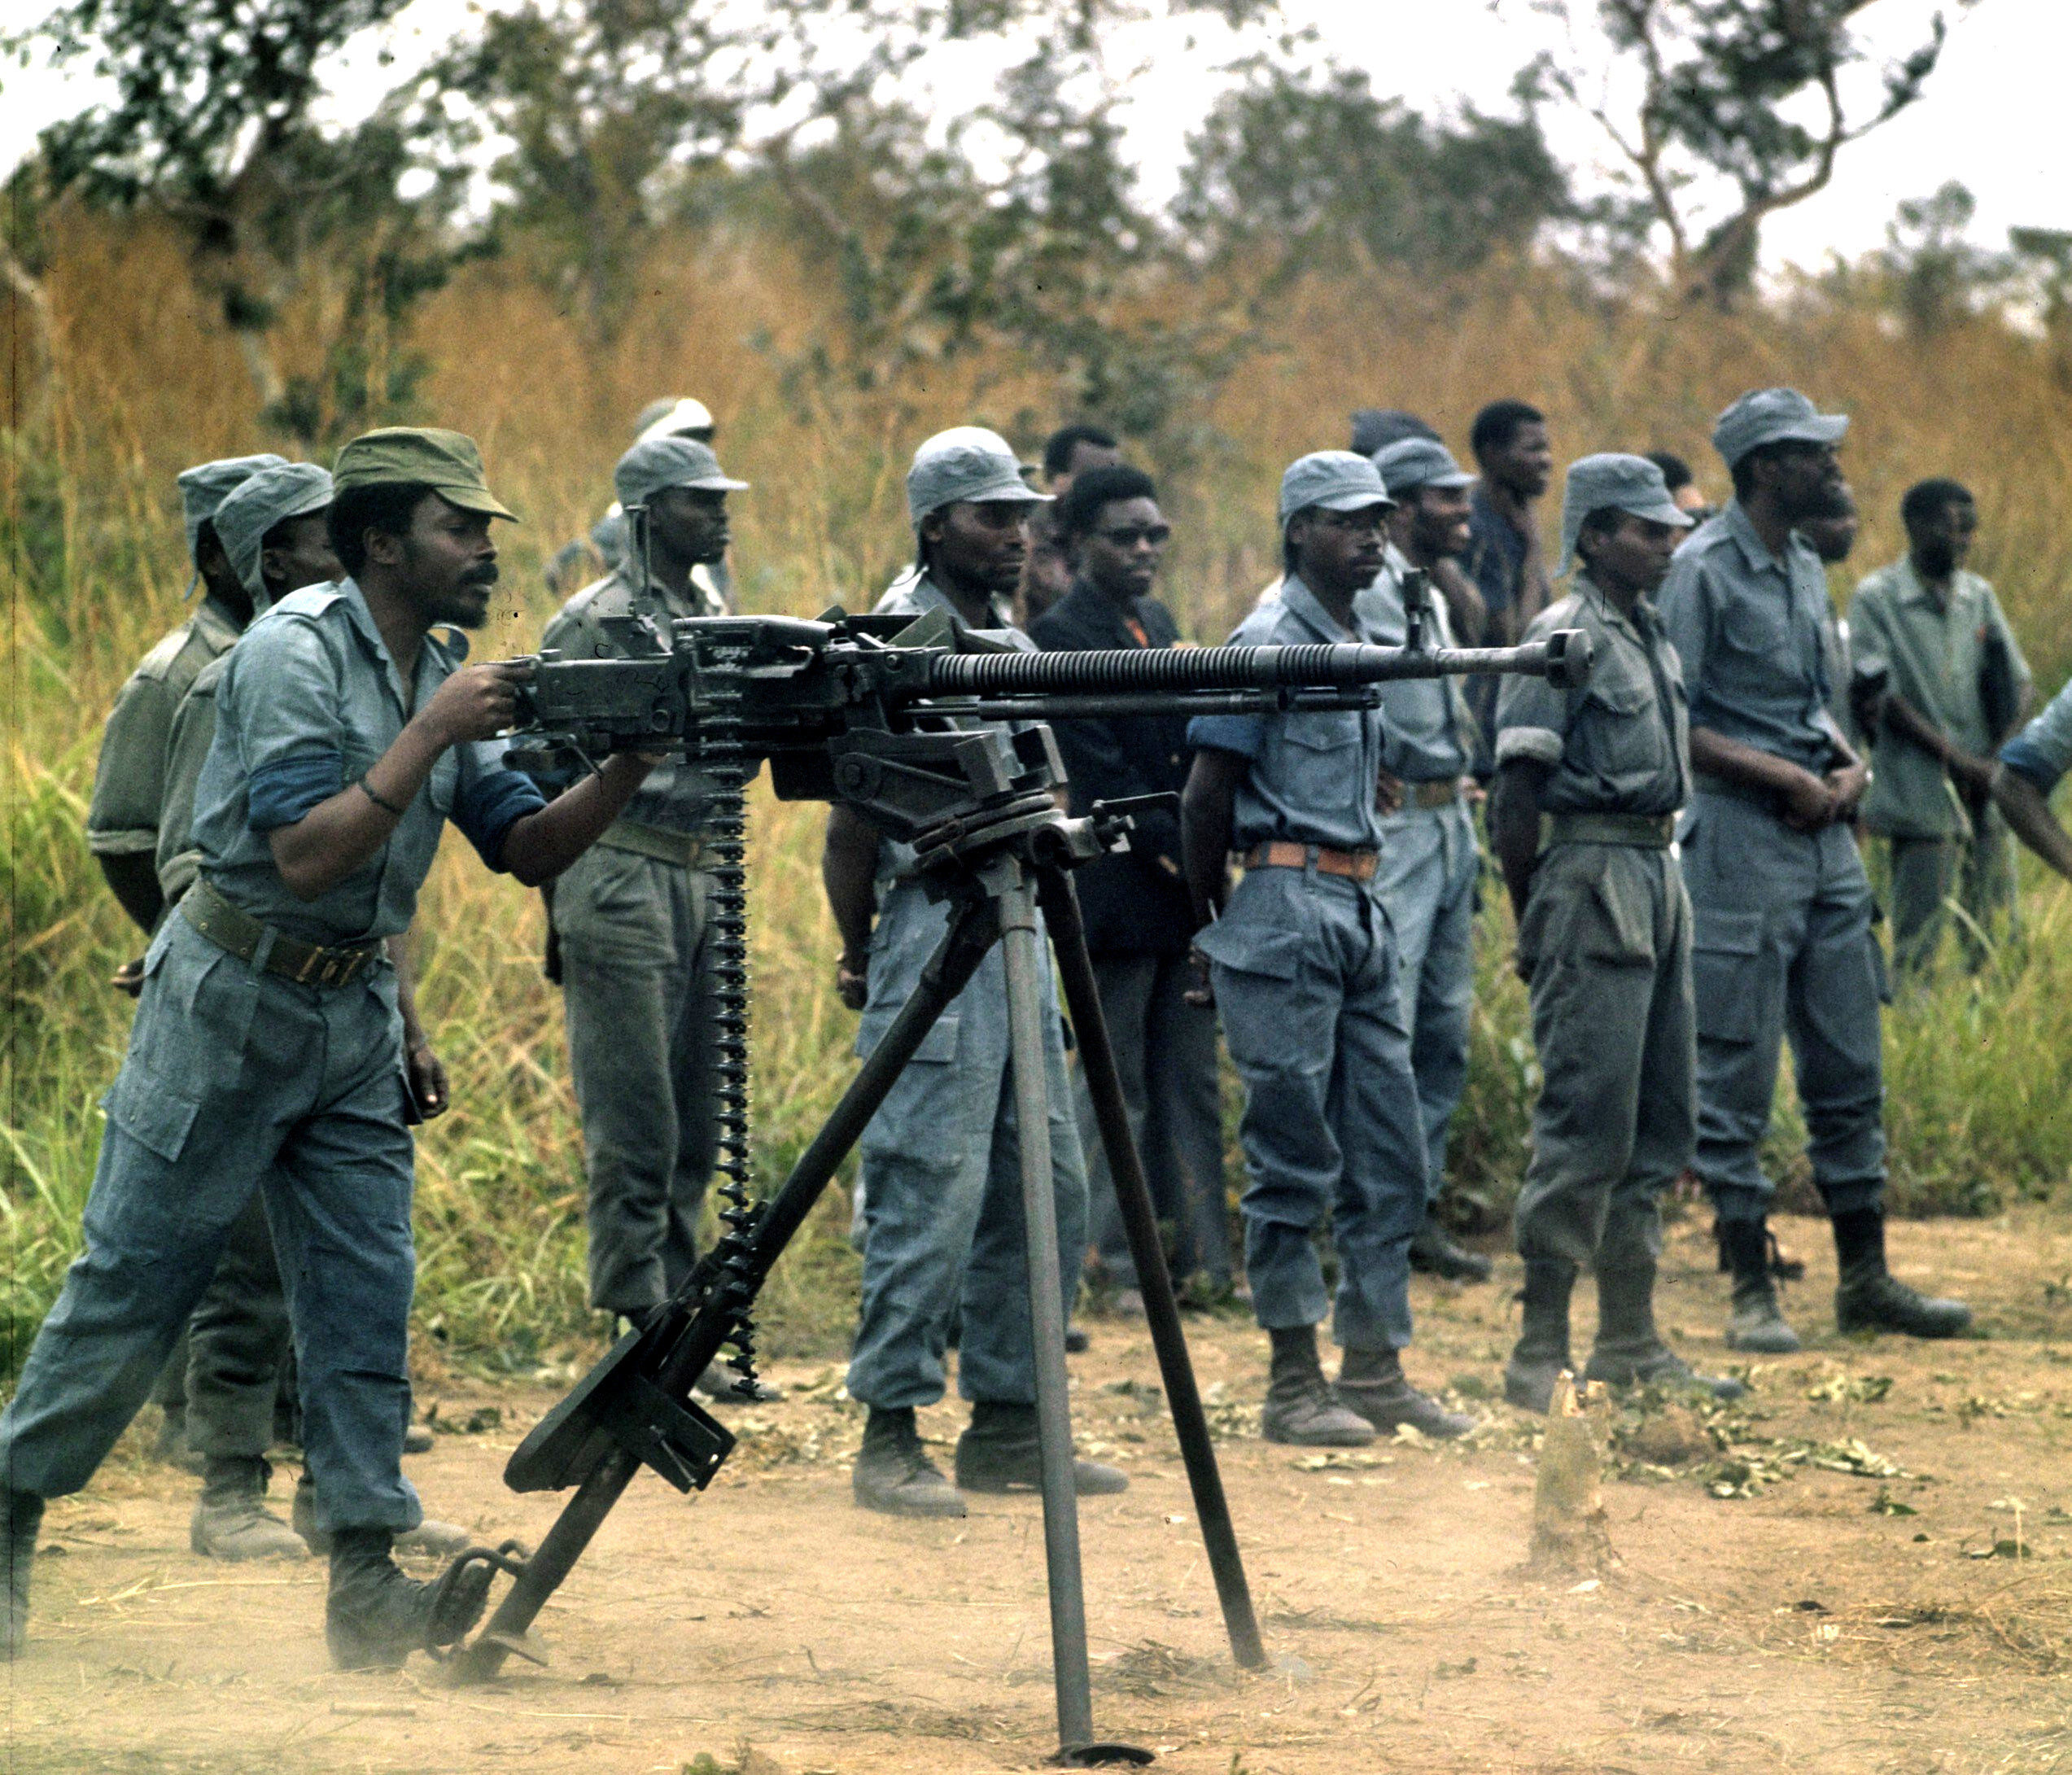 Żołnierze Narodowego Frontu Wyzwolenia Angoli ćwiczą w obozie w Zairze, rok 1973